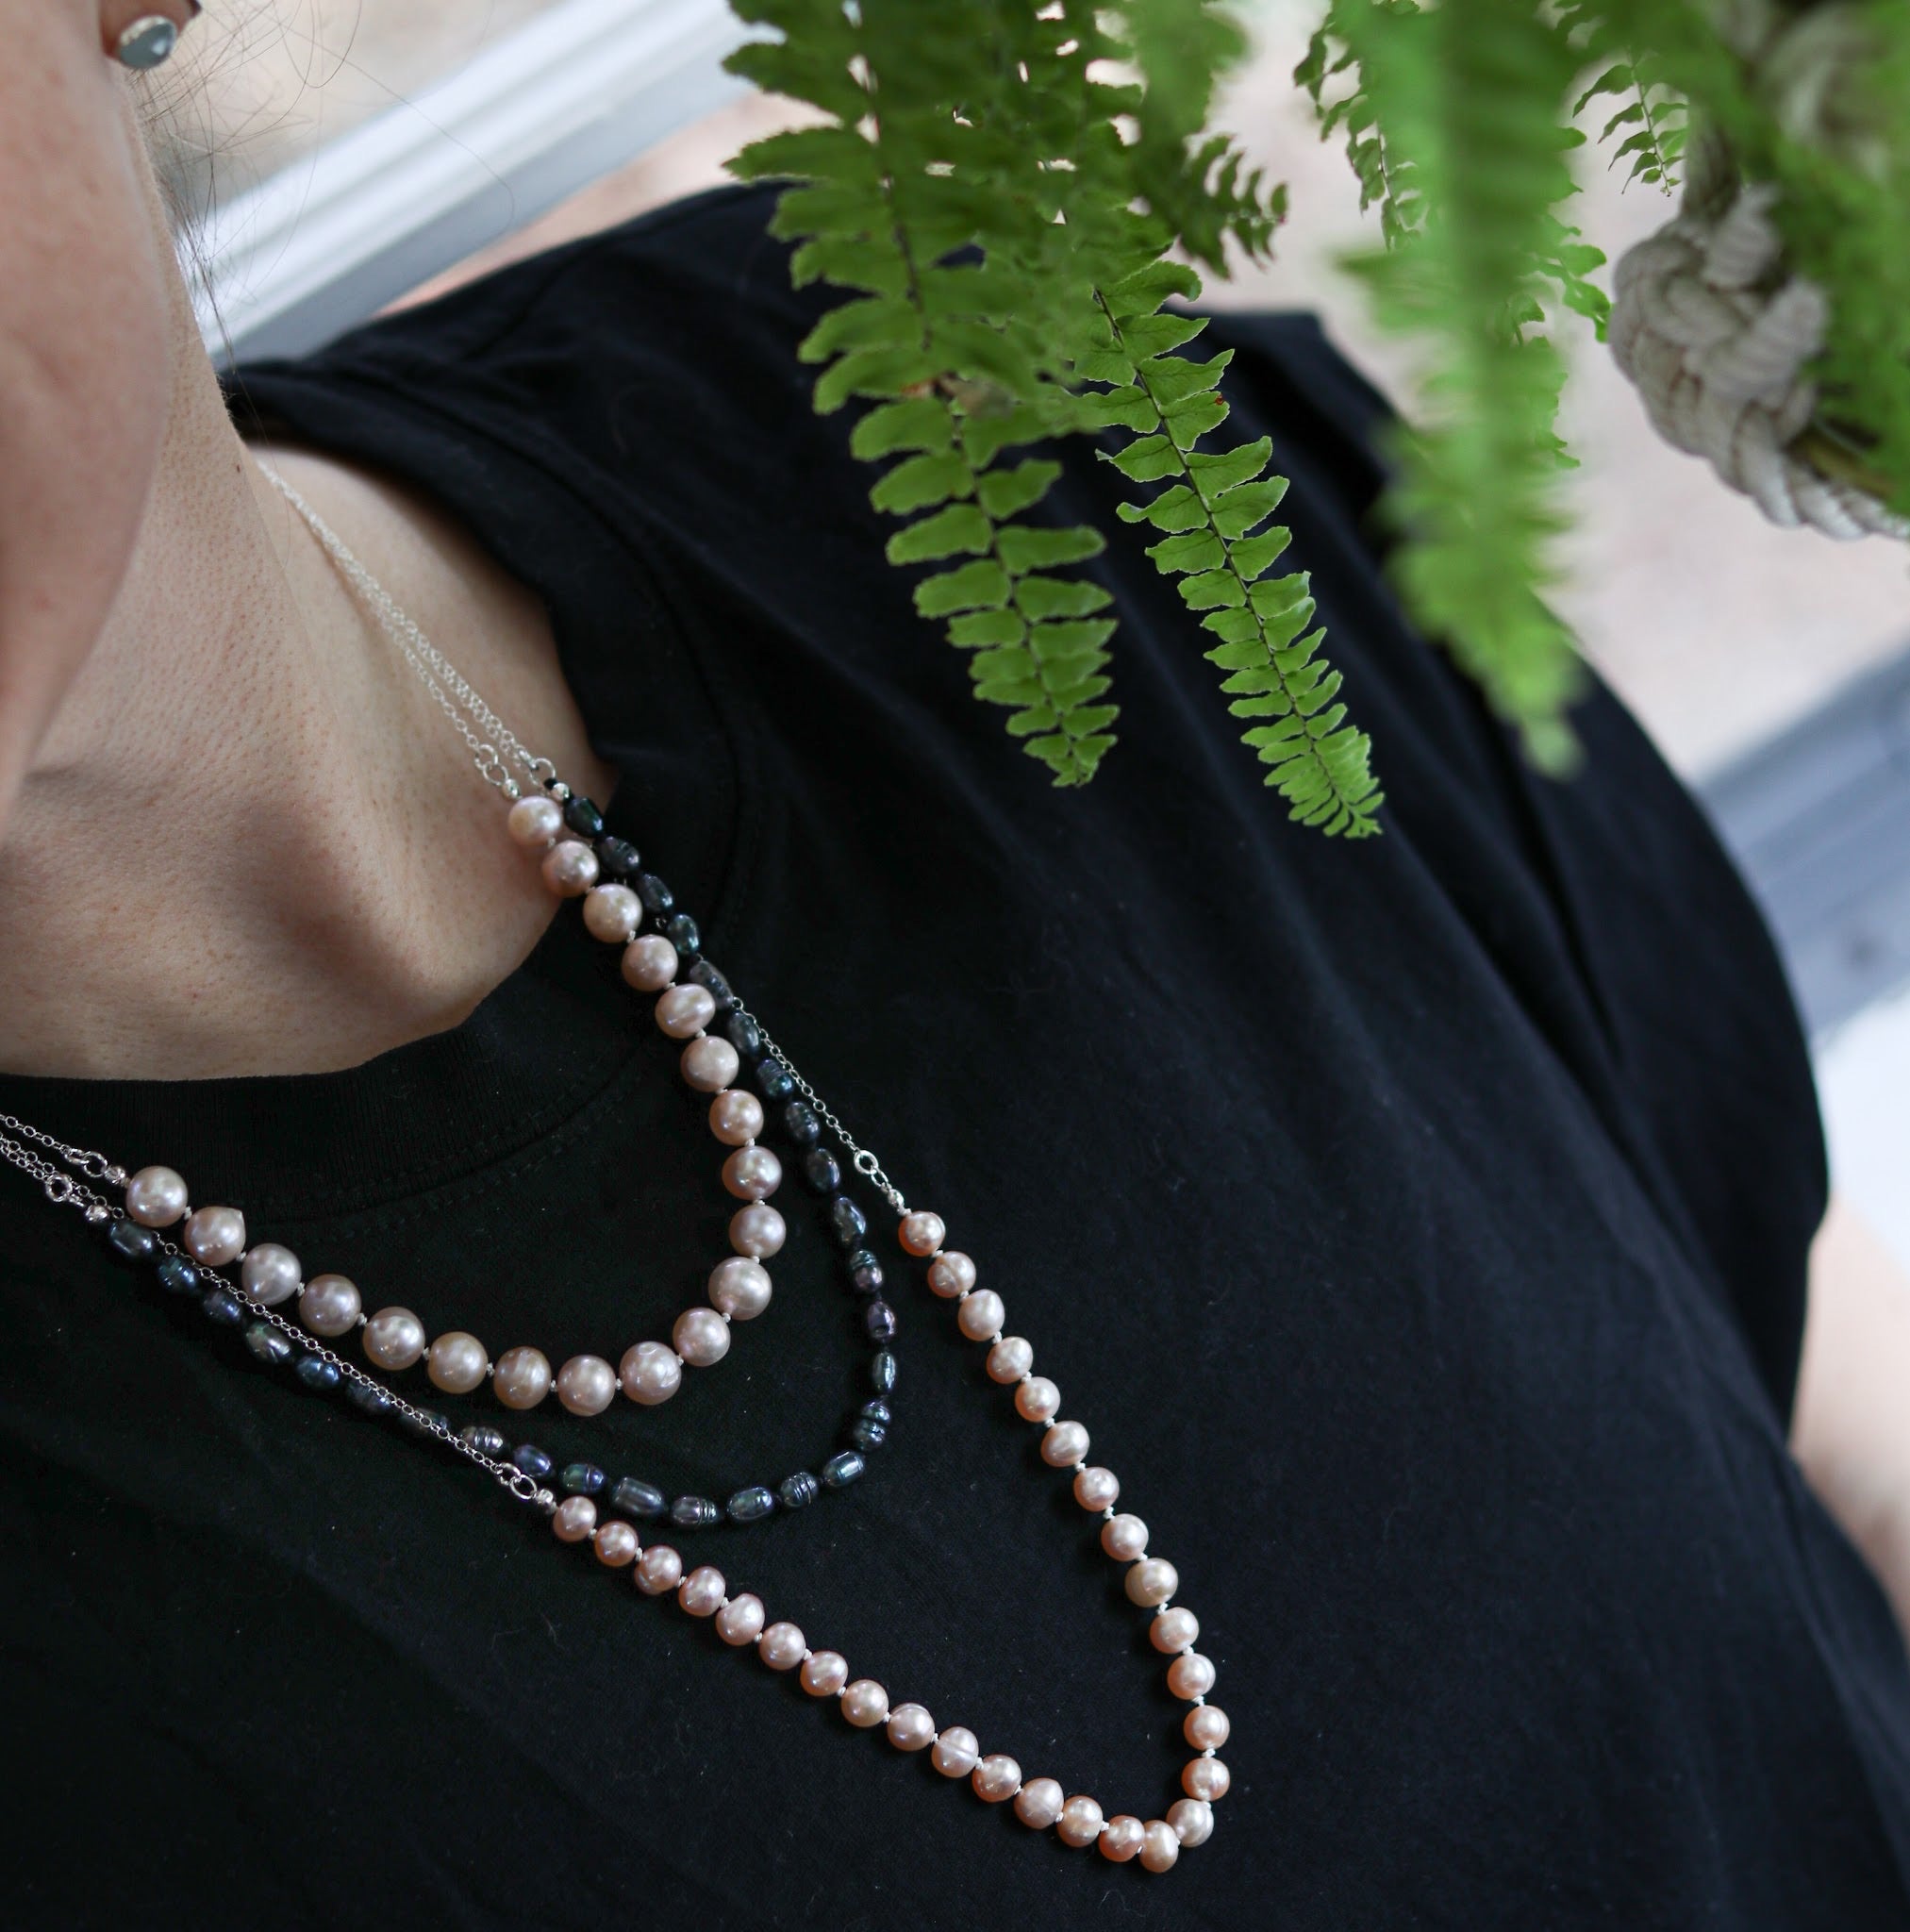 Nehita 14k Gold & Fresh-Water Pearl Rosary Necklace – Nehita Jewelry